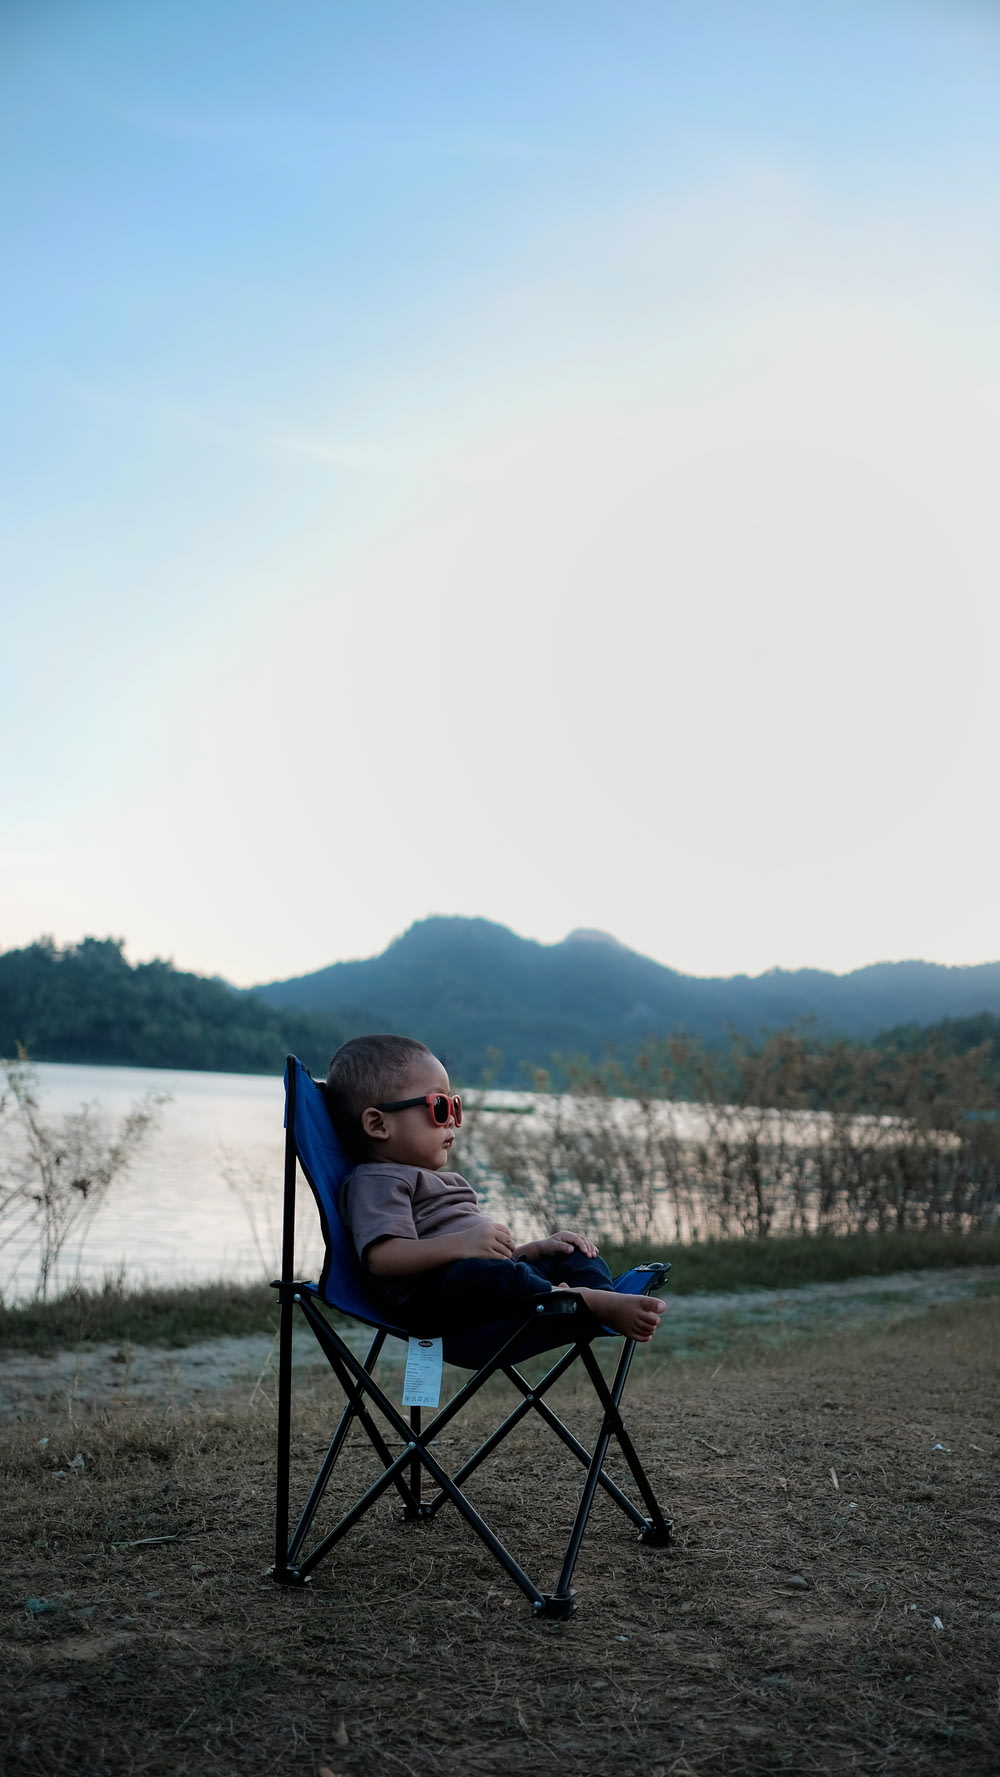 검은 색과 파란색 캠핑 의자에 앉아있는 유아